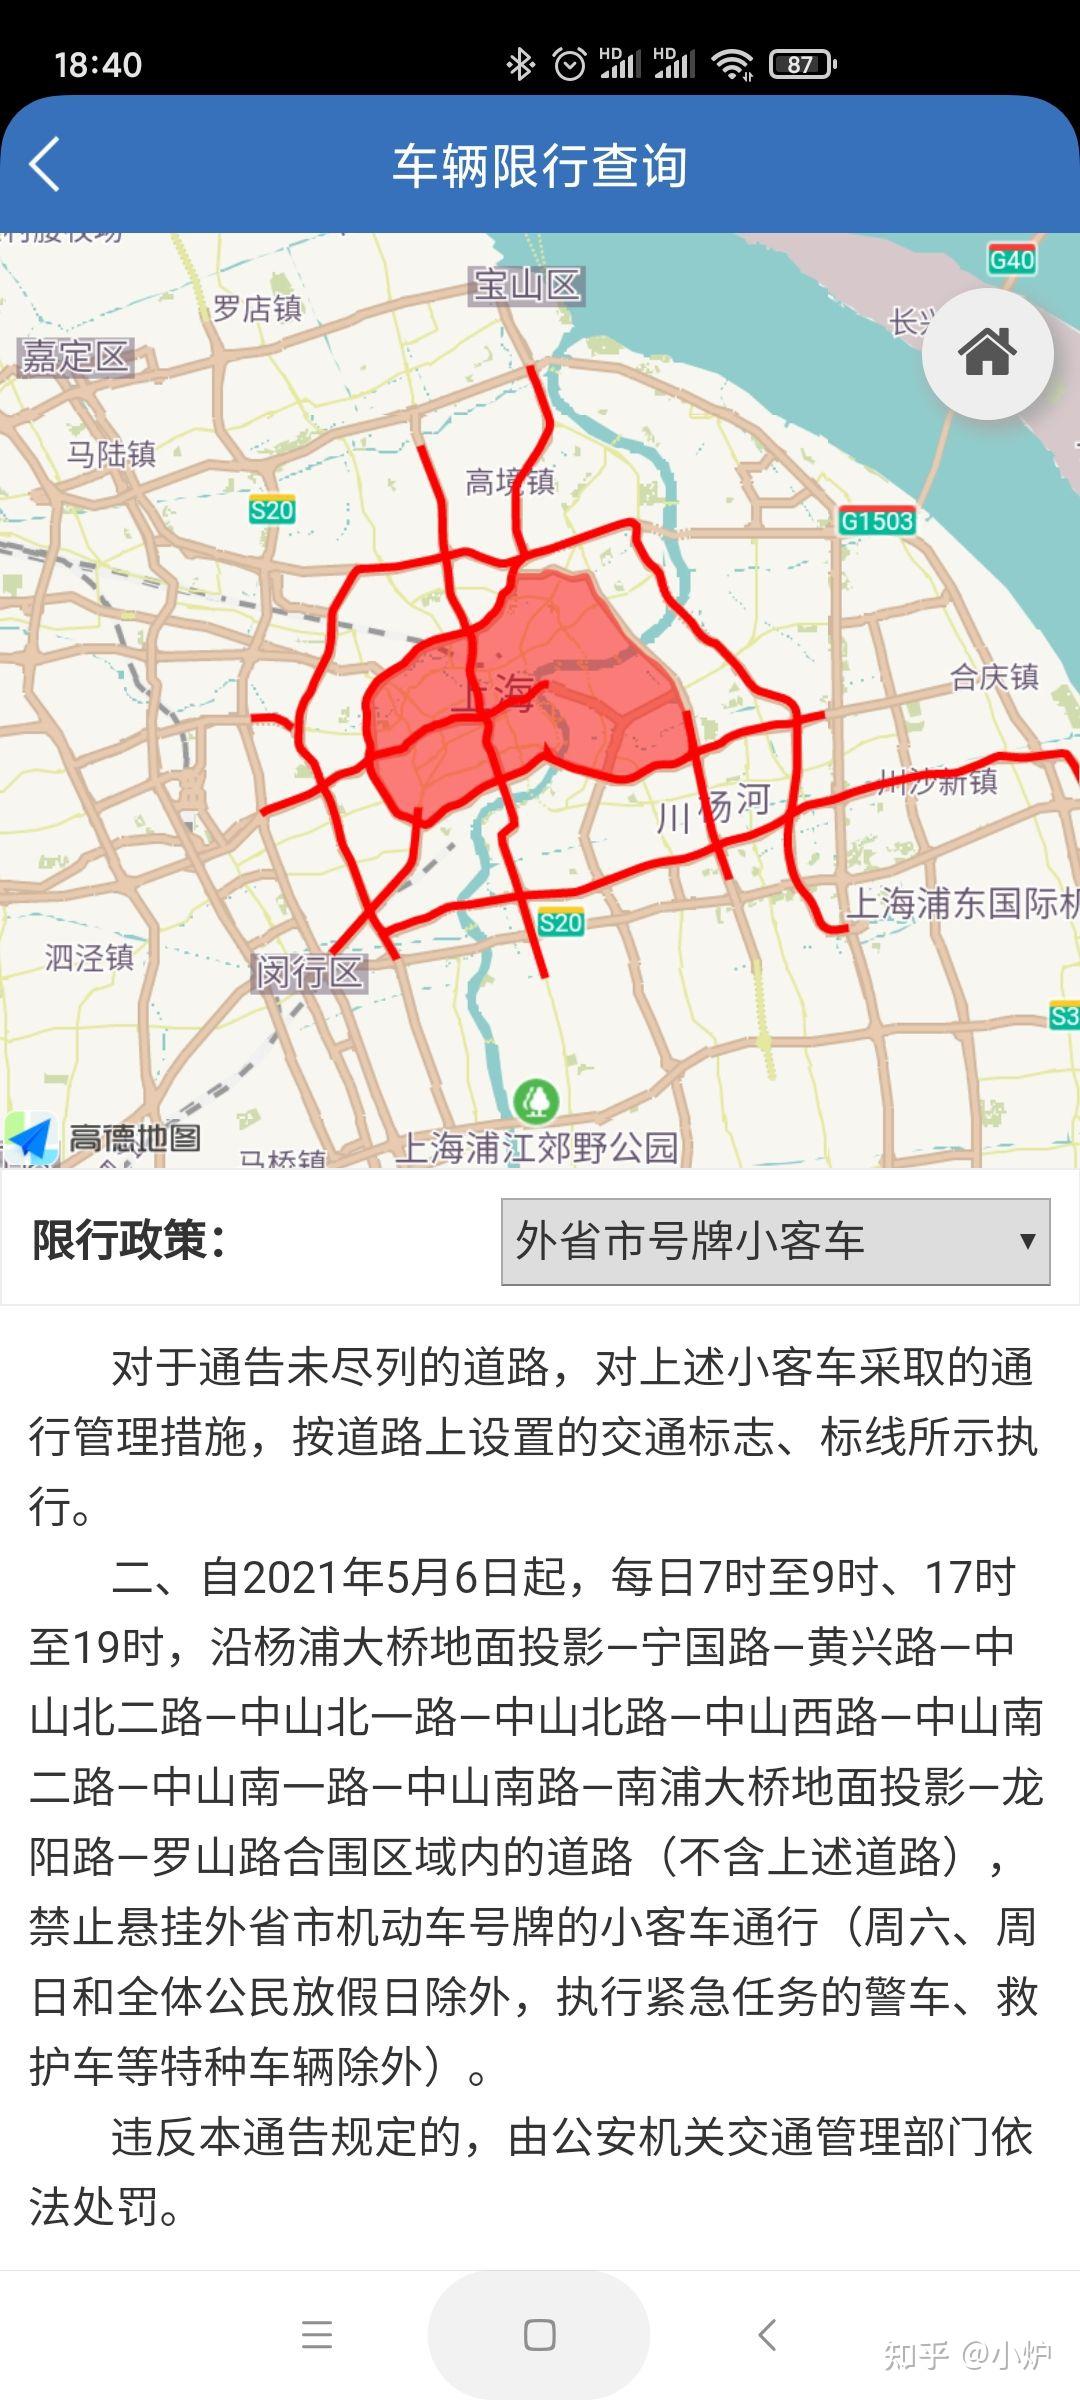 上海限行区域图范围图片